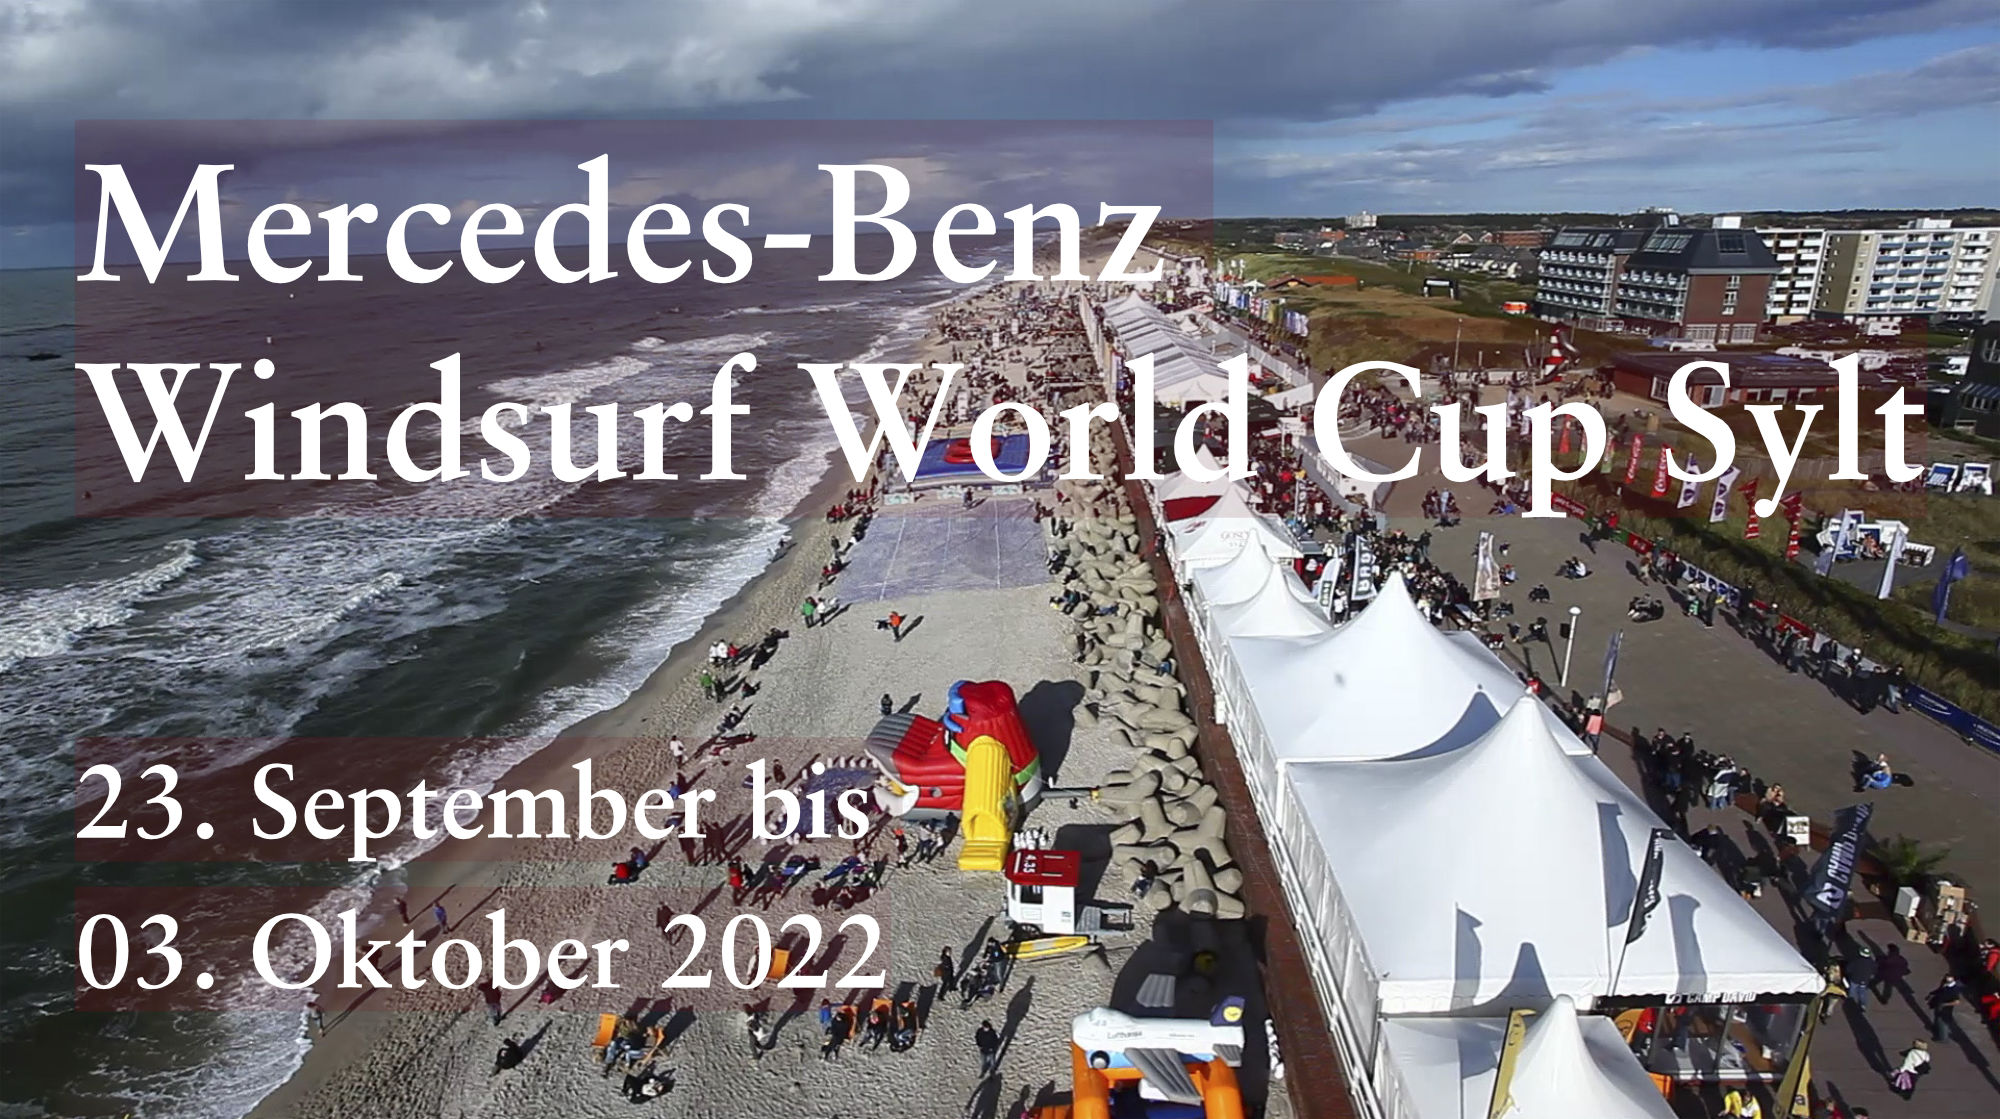 Neptunsgeschmeide Titelbild News Mercedes-Benz Windsurf World Cup Sylt 2022. Bild: copyright: AIR MANICS / HOCH ZWEI